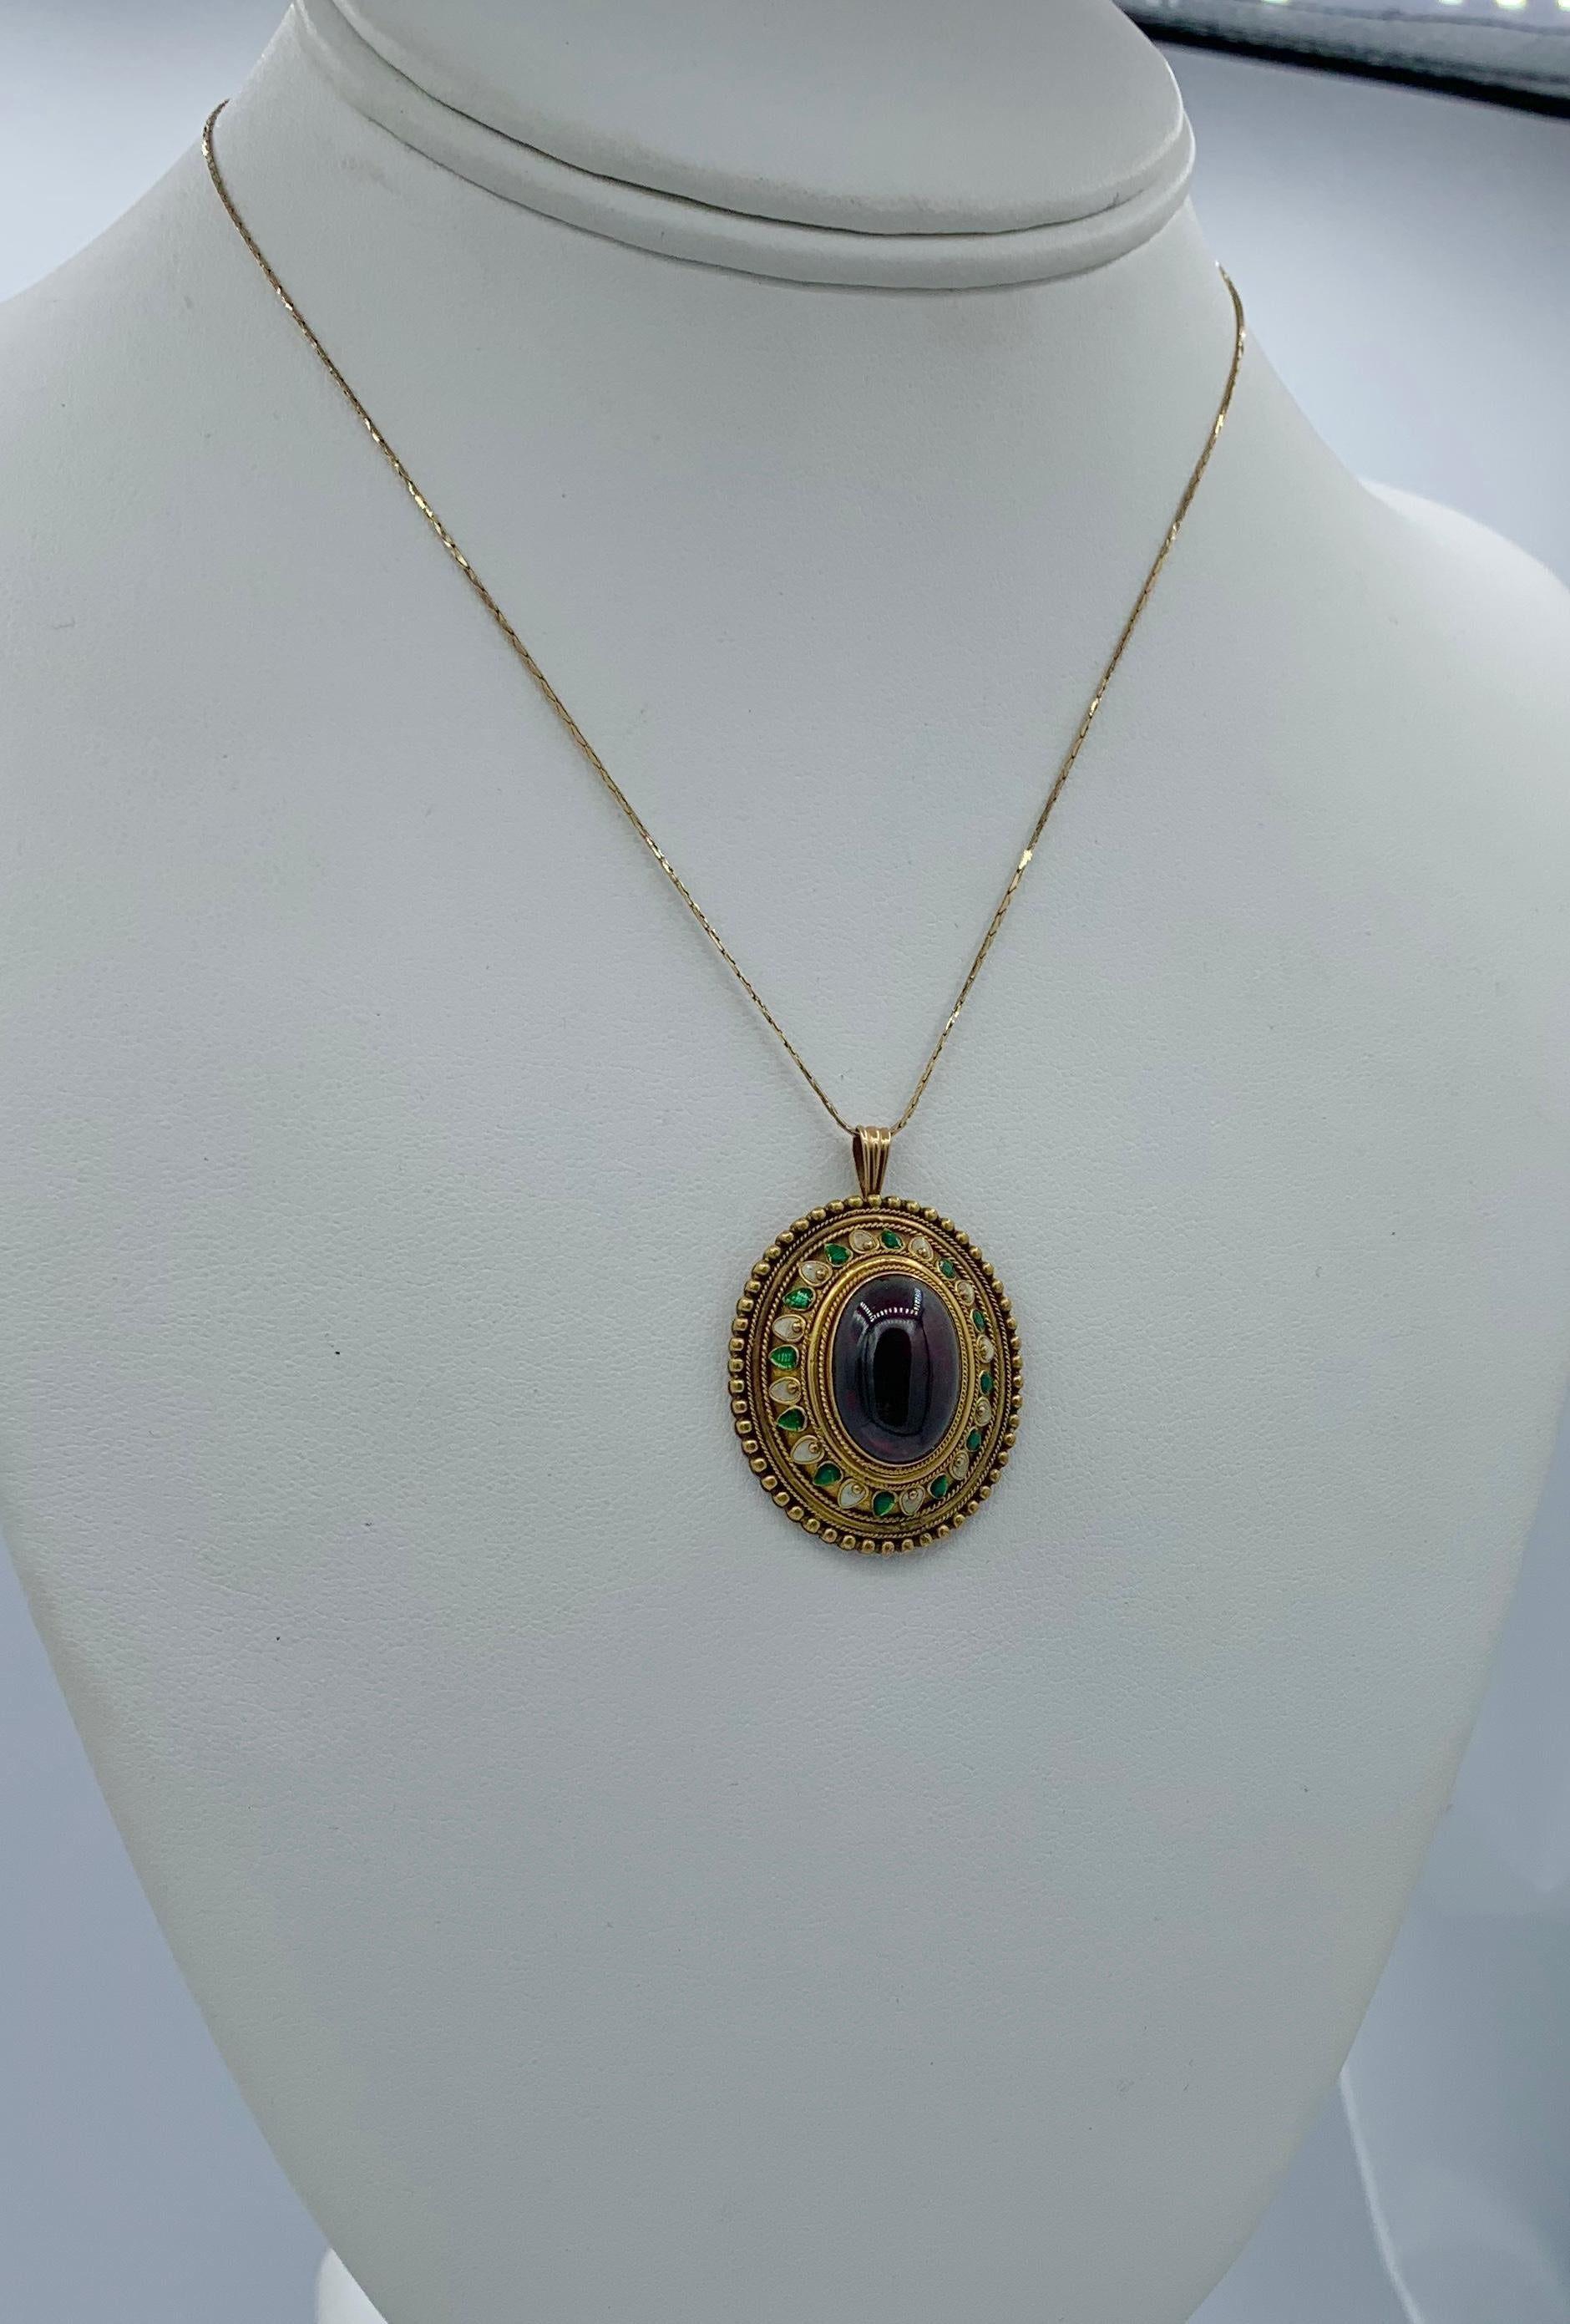 Women's Etruscan Revival Garnet Enamel Gold Pendant Necklace Circa 1860 Museum Quality For Sale